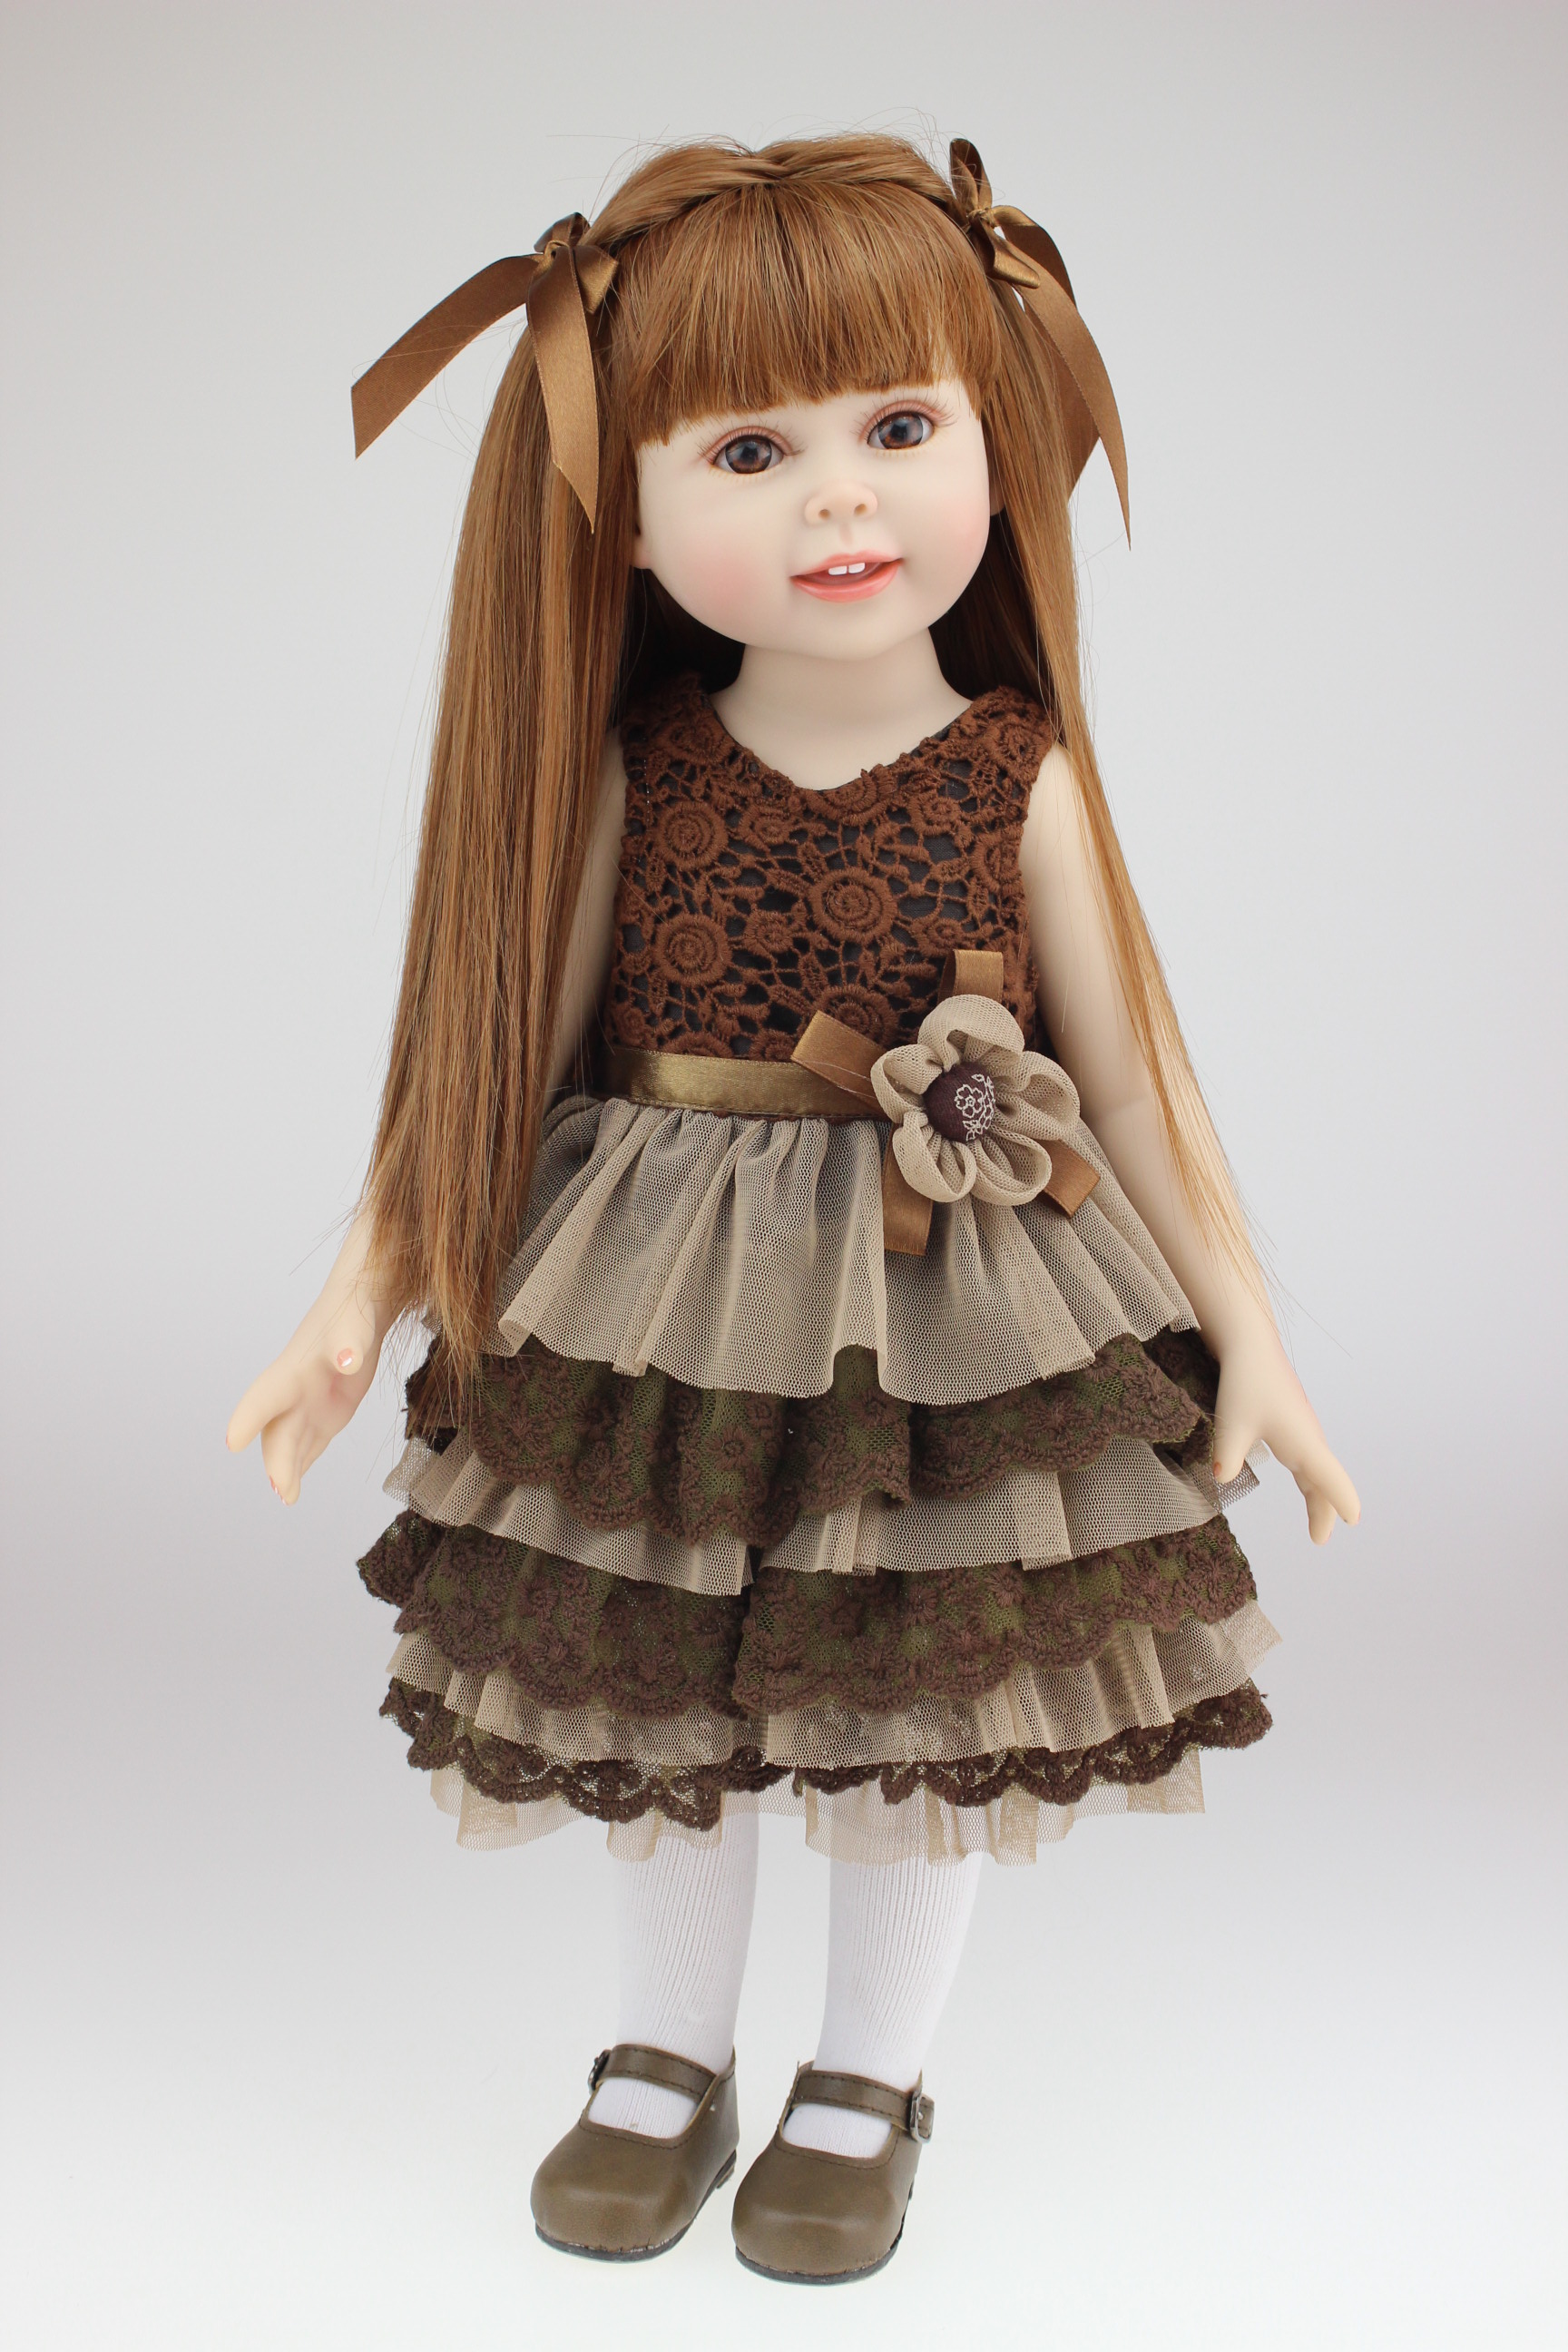 Bambola alla moda da ragazza americana da 18 pollici realistica rifinita con una bella gonna regalo per Natale e compleanno del bambino